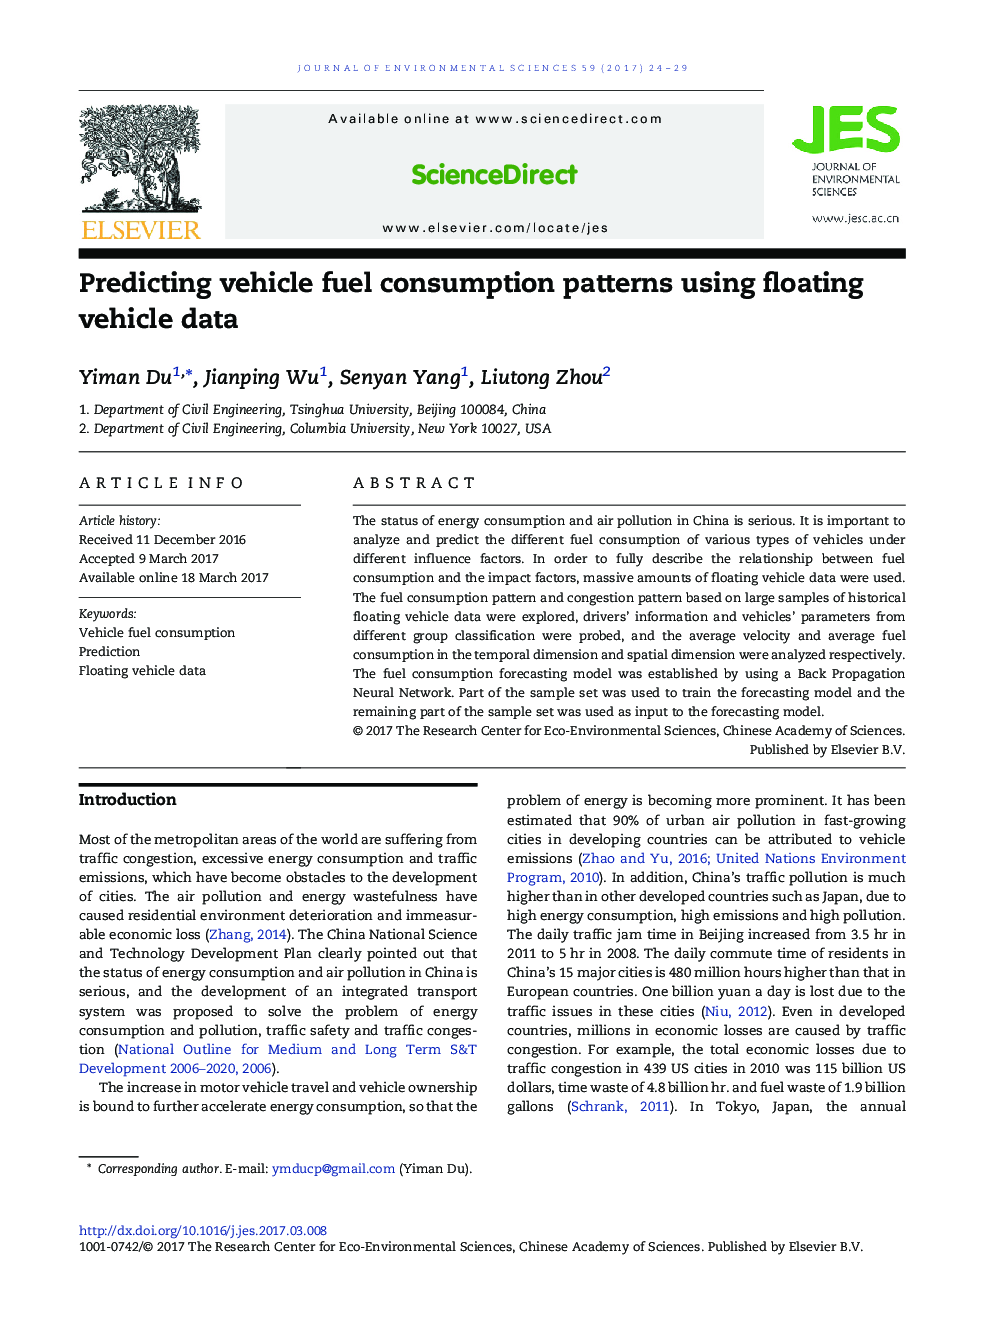 پیش بینی الگوهای مصرف سوخت خودرو با استفاده از داده های وسیله نقلیه شناور 